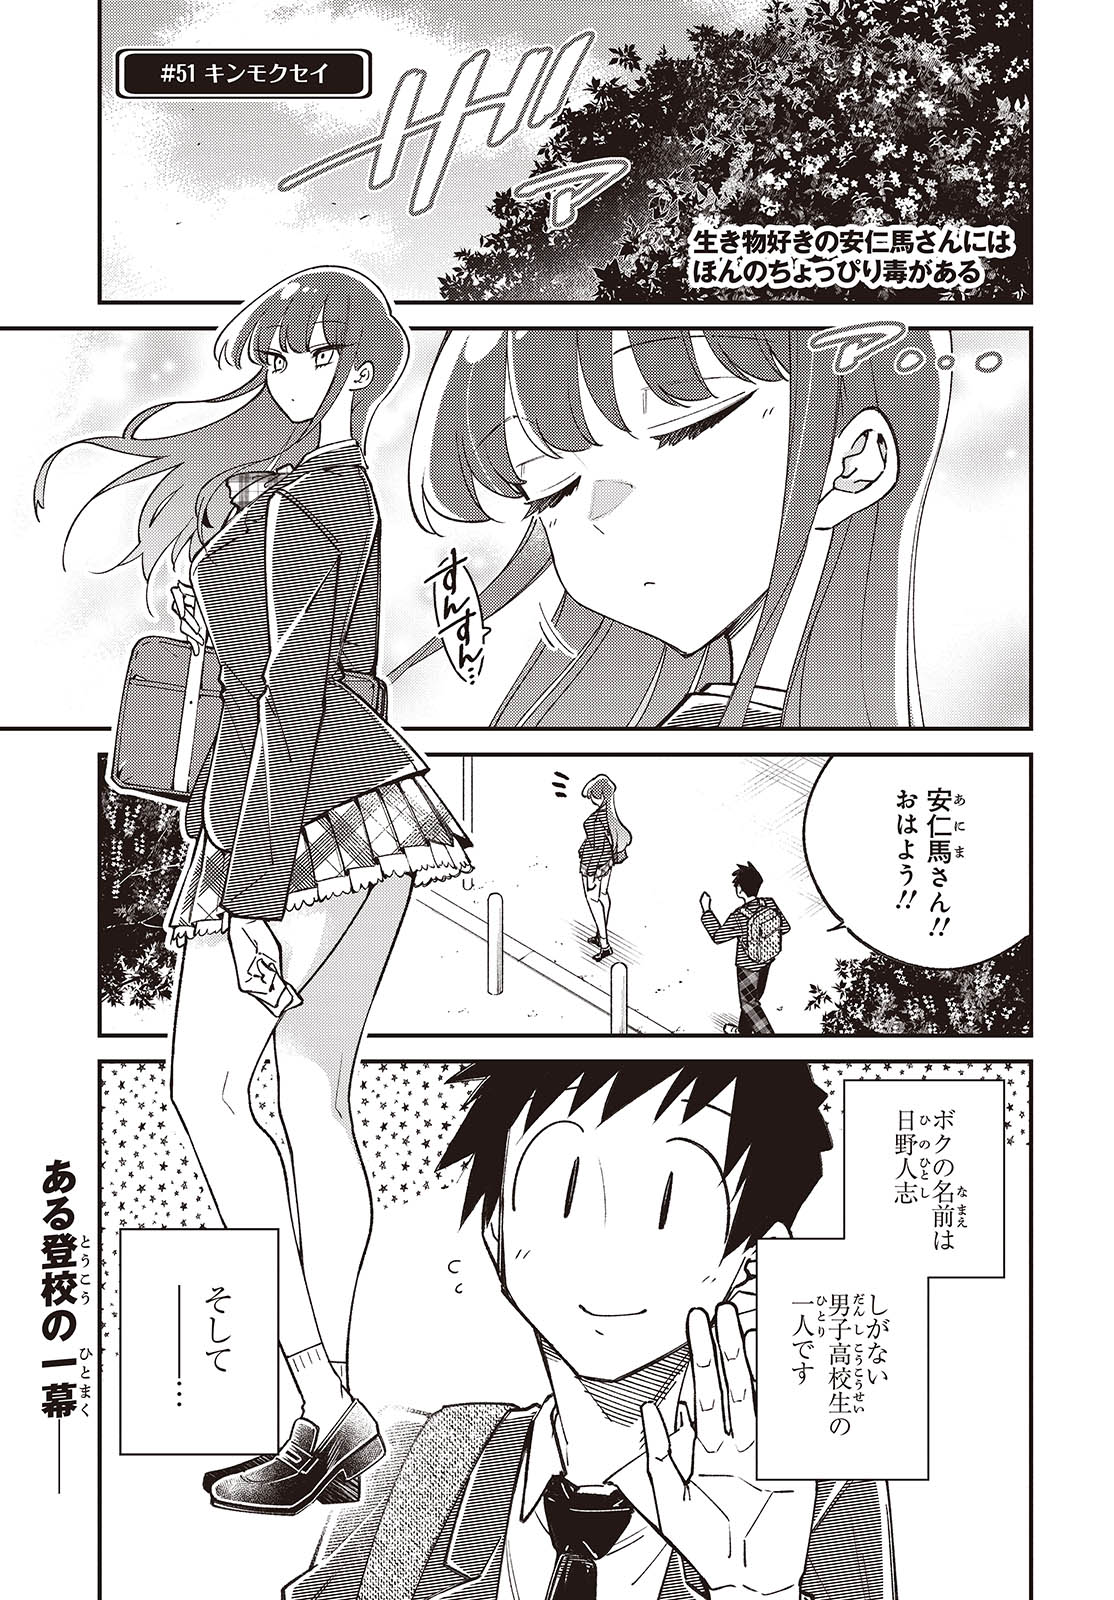 Ikimono-suki no Anima-san ni wa Honno Choppiri Doku ga aru - Chapter 11 - Page 1